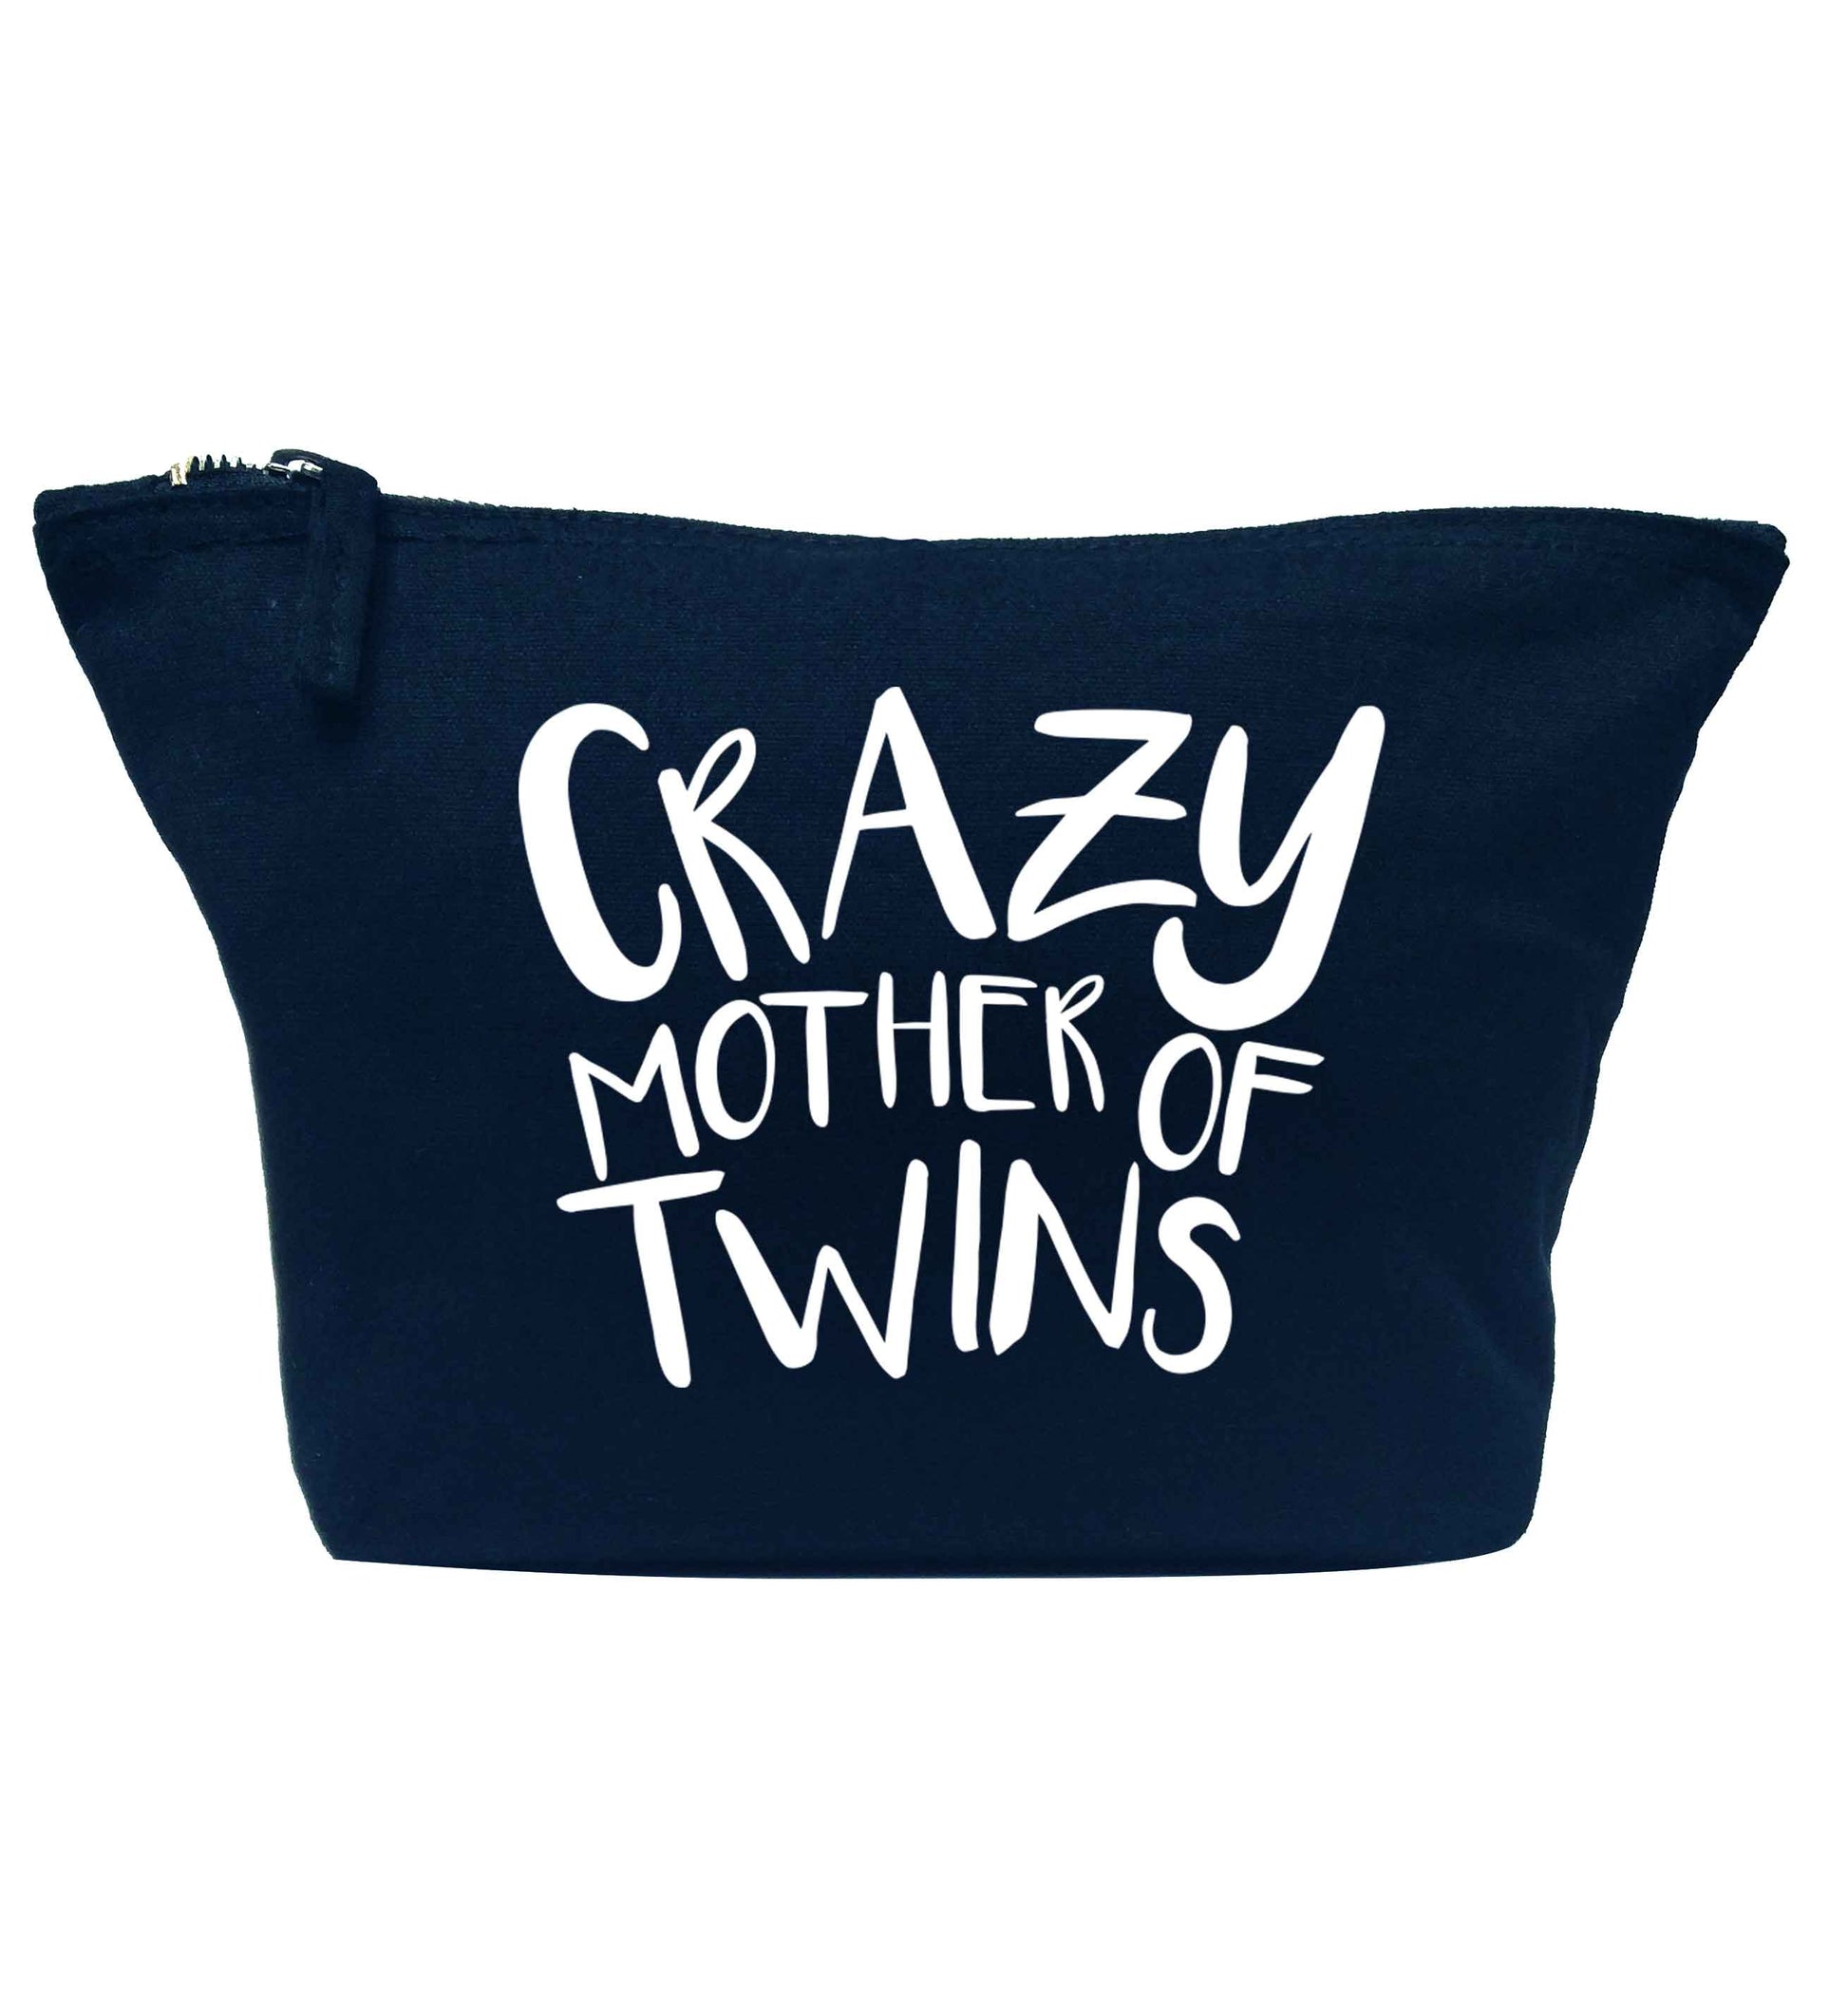 Crazy mother of twins navy makeup bag